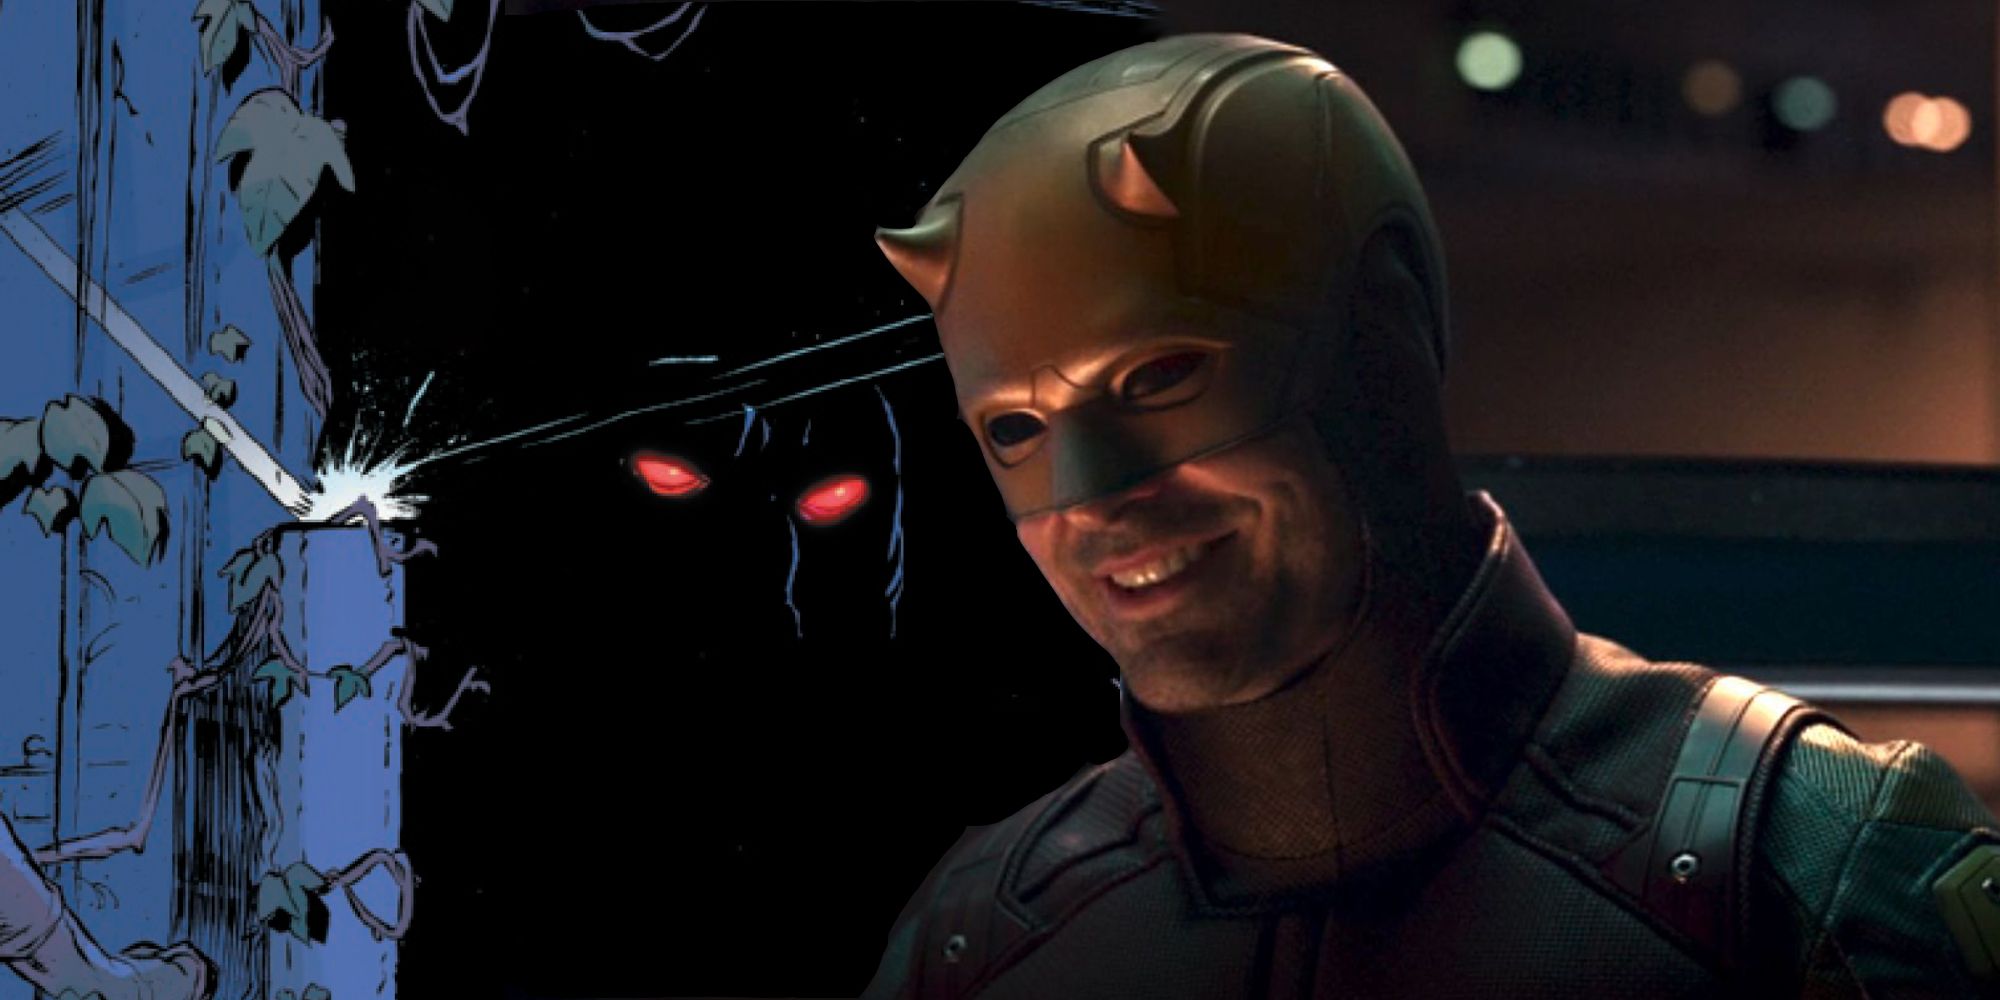 1El monstruo del MCU nunca puede dañar a Daredevil